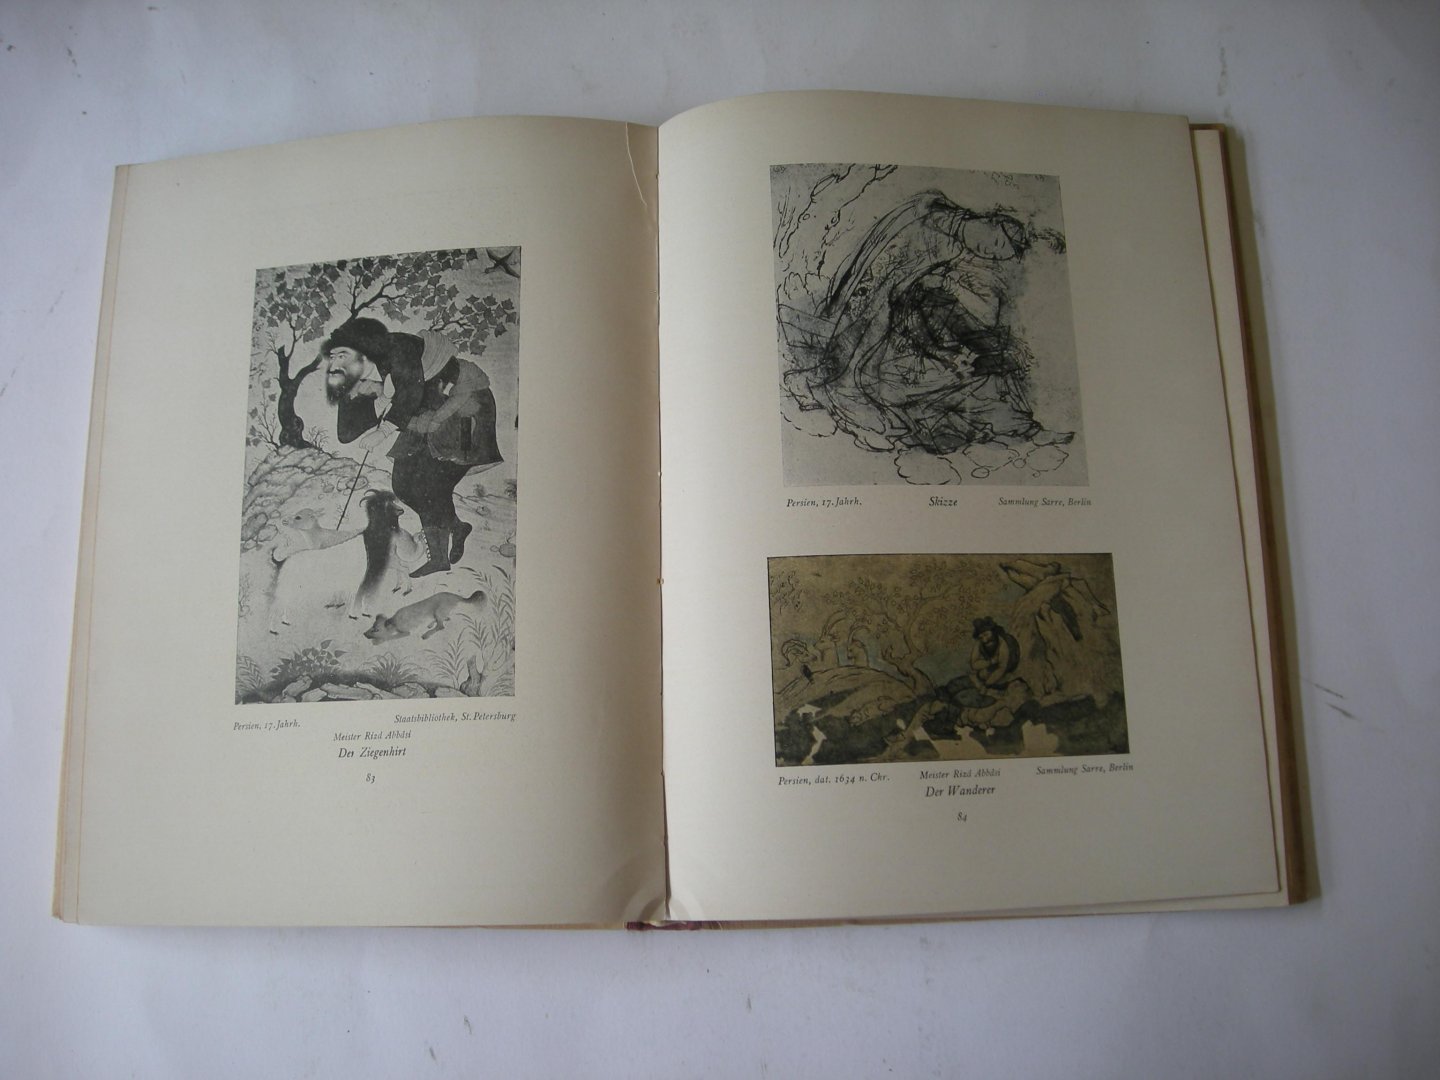 Kuhnel, Ernst - Miniaturmalerei im Islamischen Orient. Mit 154 Tafeln und 5 textabbildungen